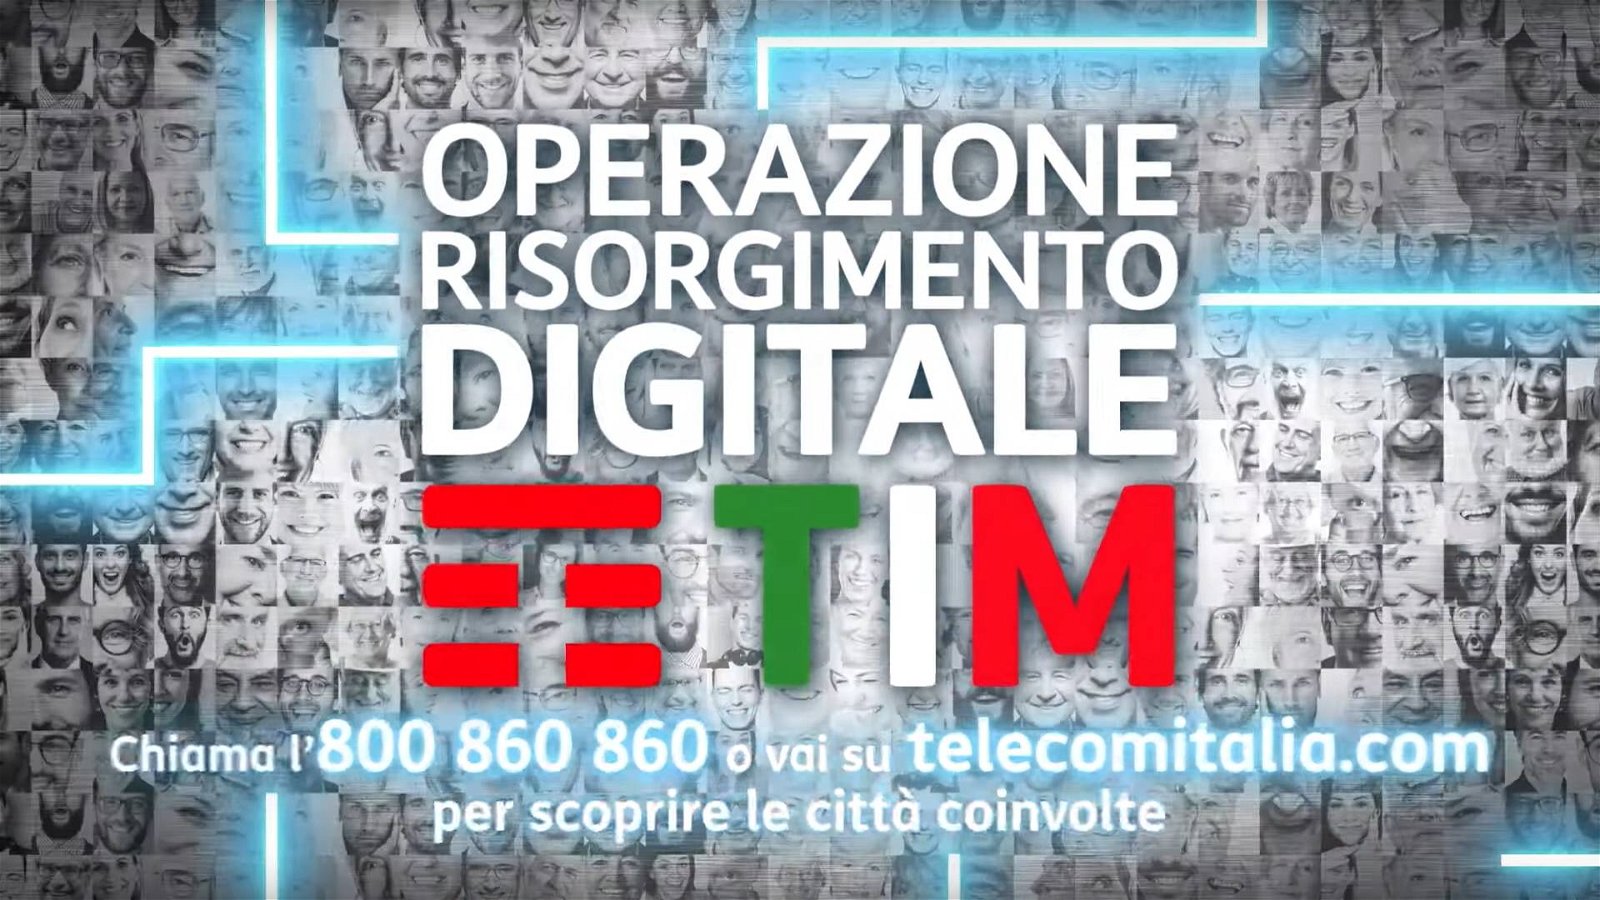 Immagine di TIM Operazione Risorgimento Digitale: obiettivo insegnare Internet a 1 milione di persone